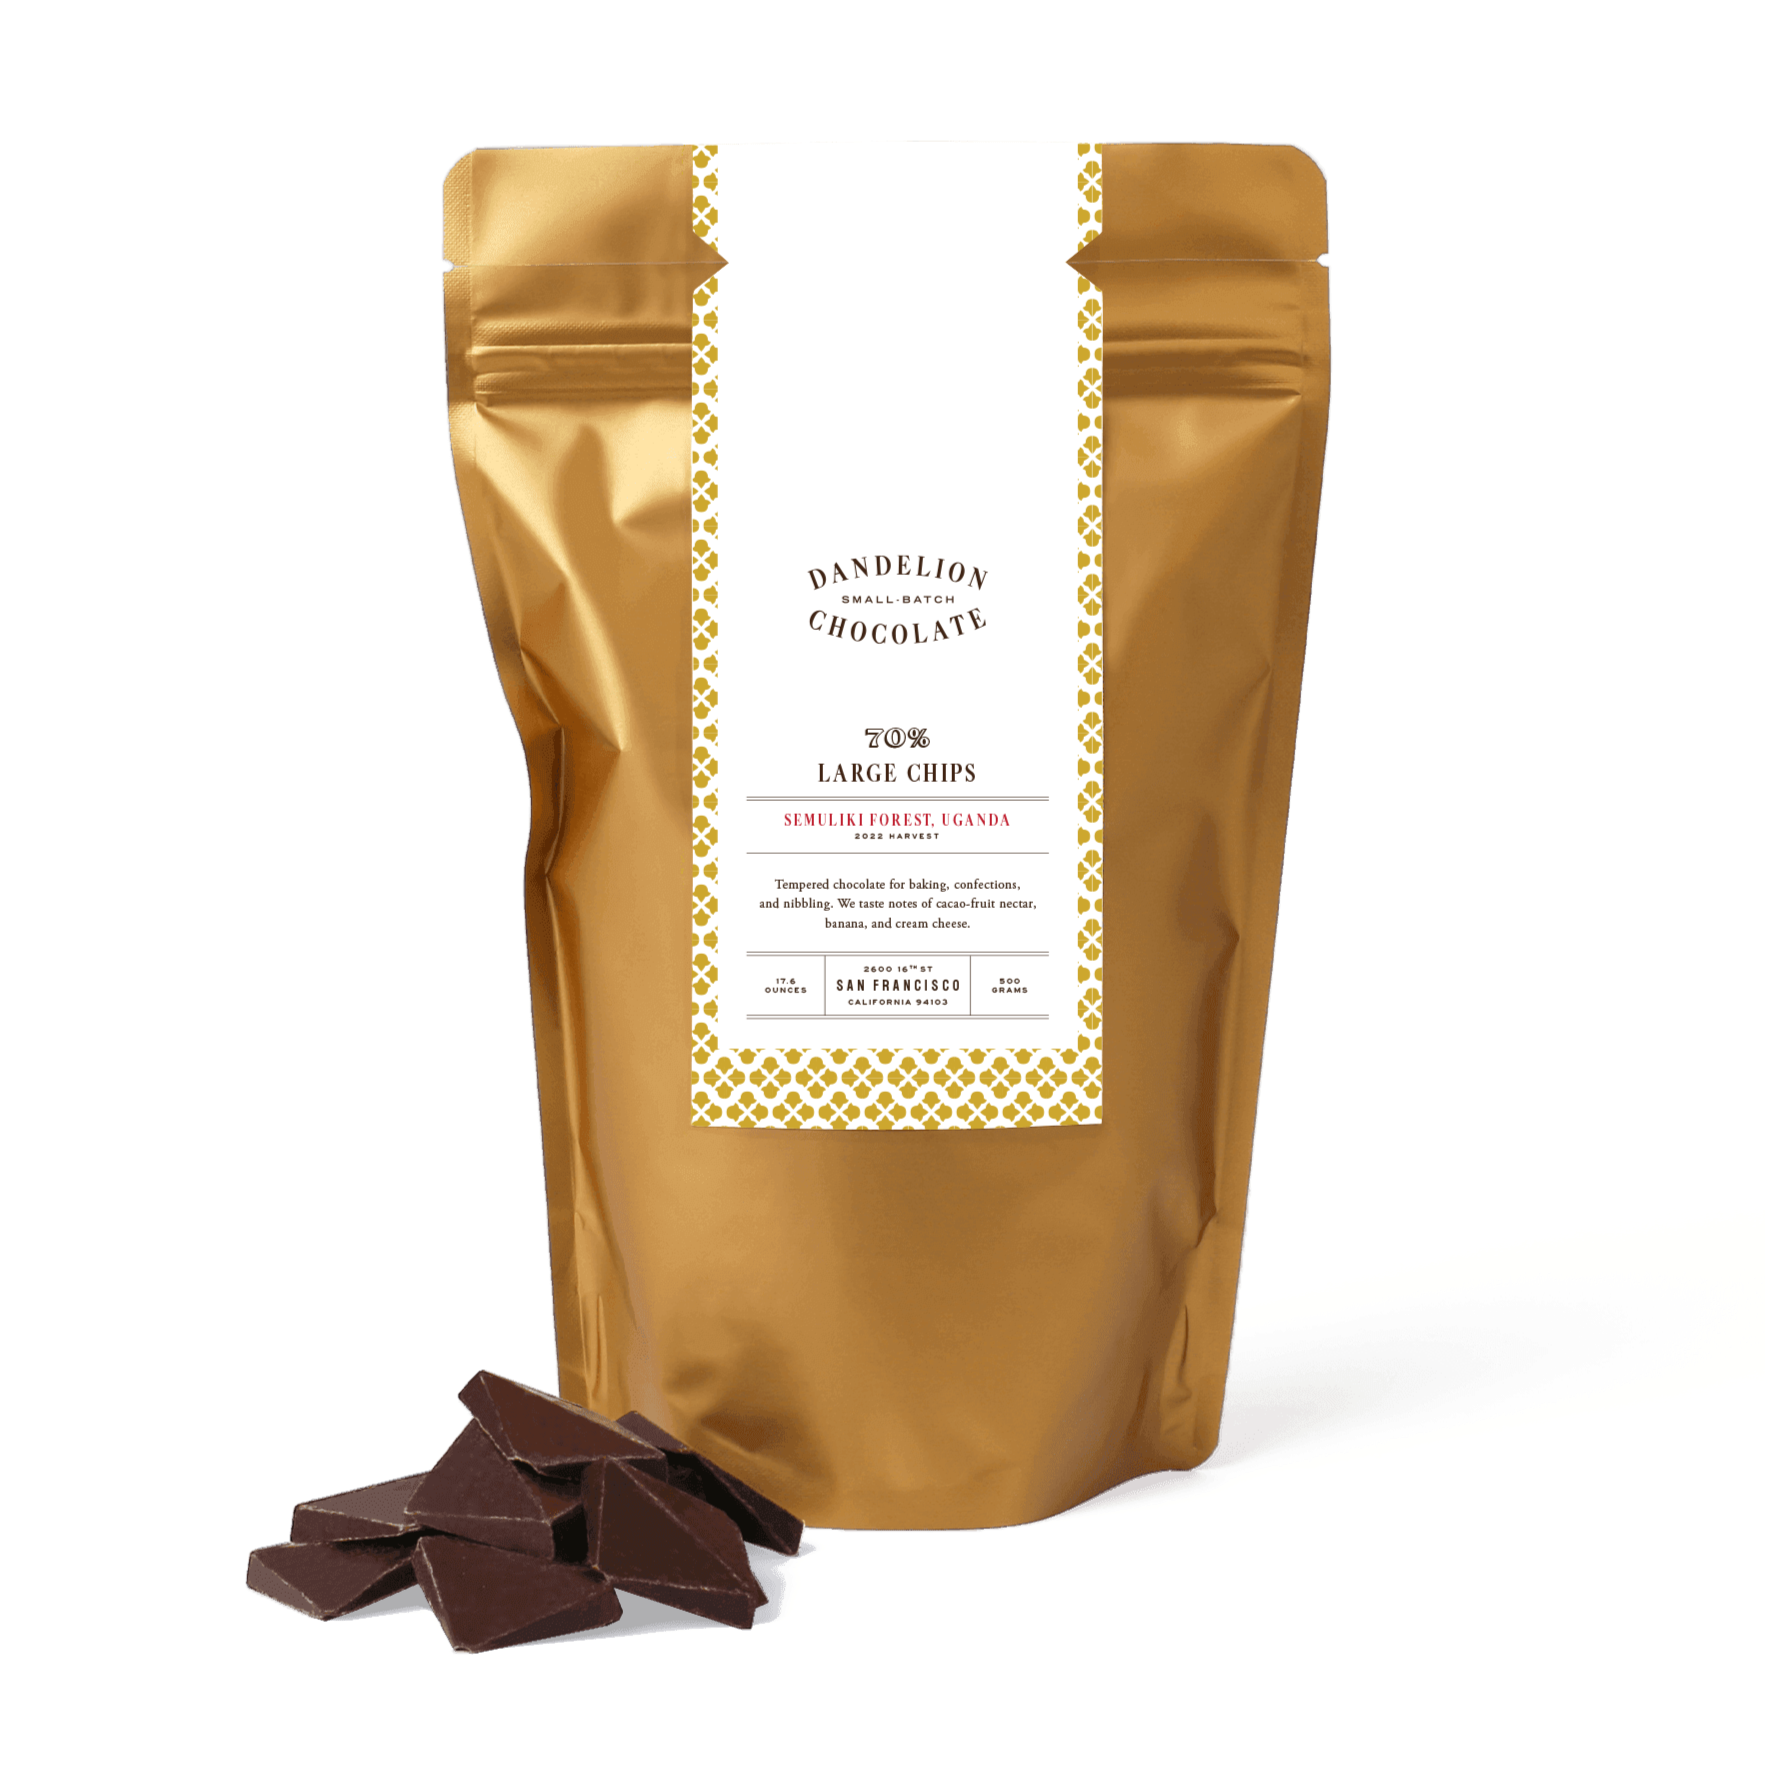 Dandelion Chocolate Large Chips Semuliki Forest, Uganda 70% 2022 Large Chips 500 g